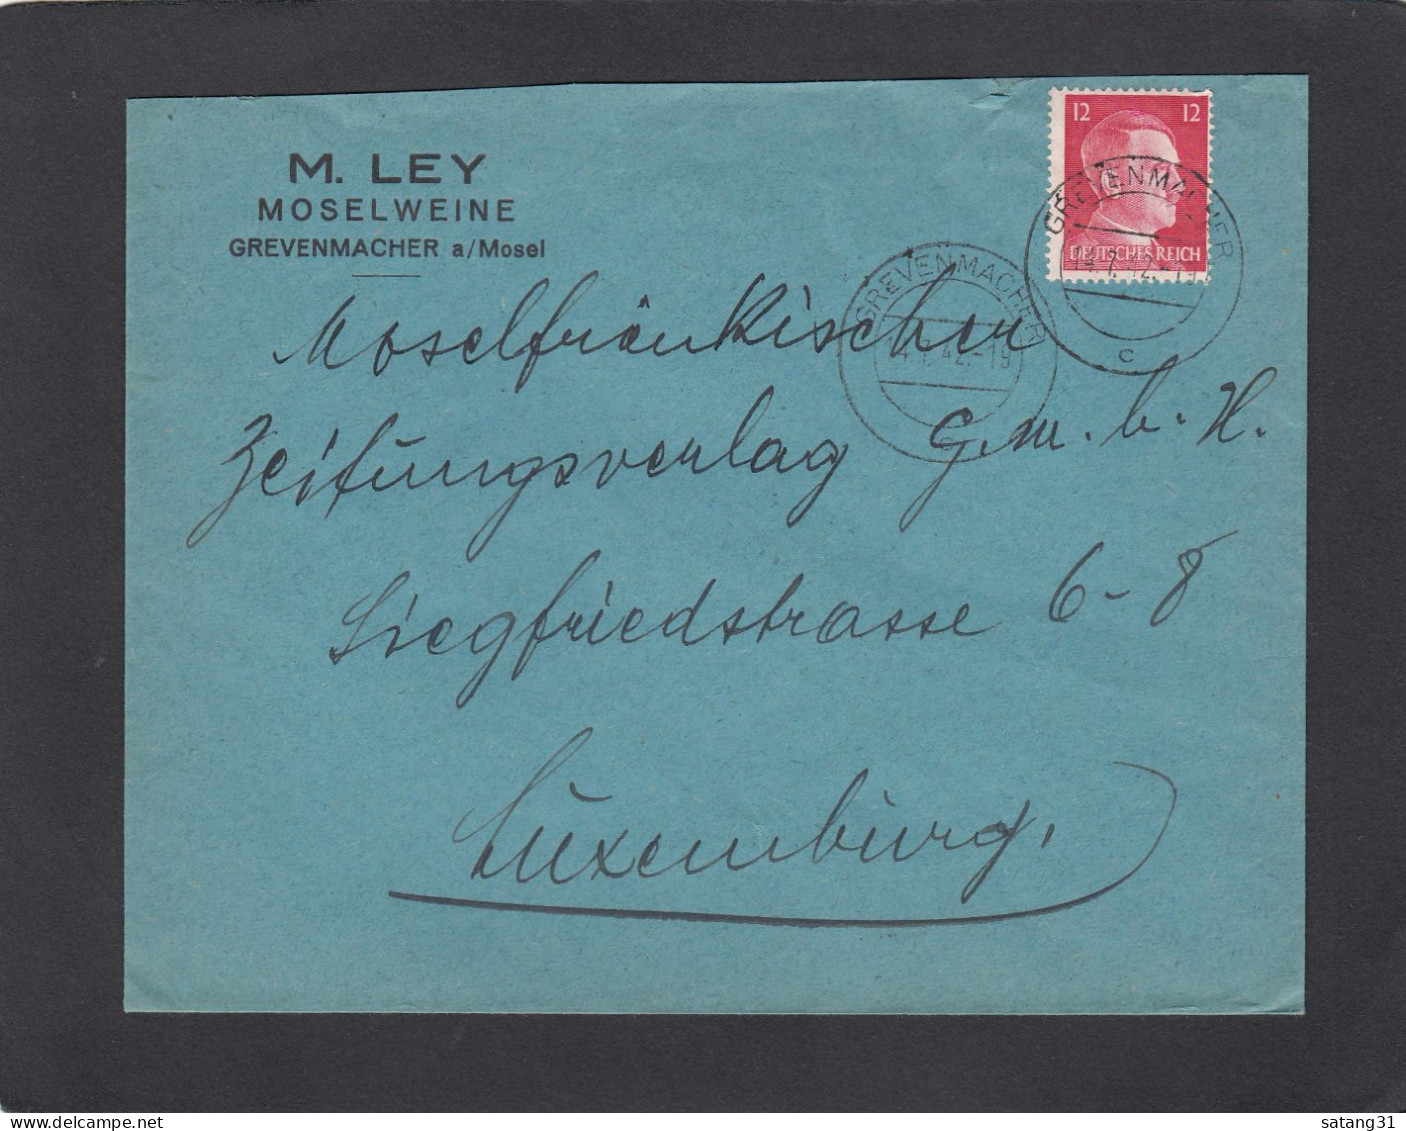 M. LEY, MOSELWEINE, GREVENMACHER. - 1940-1944 German Occupation